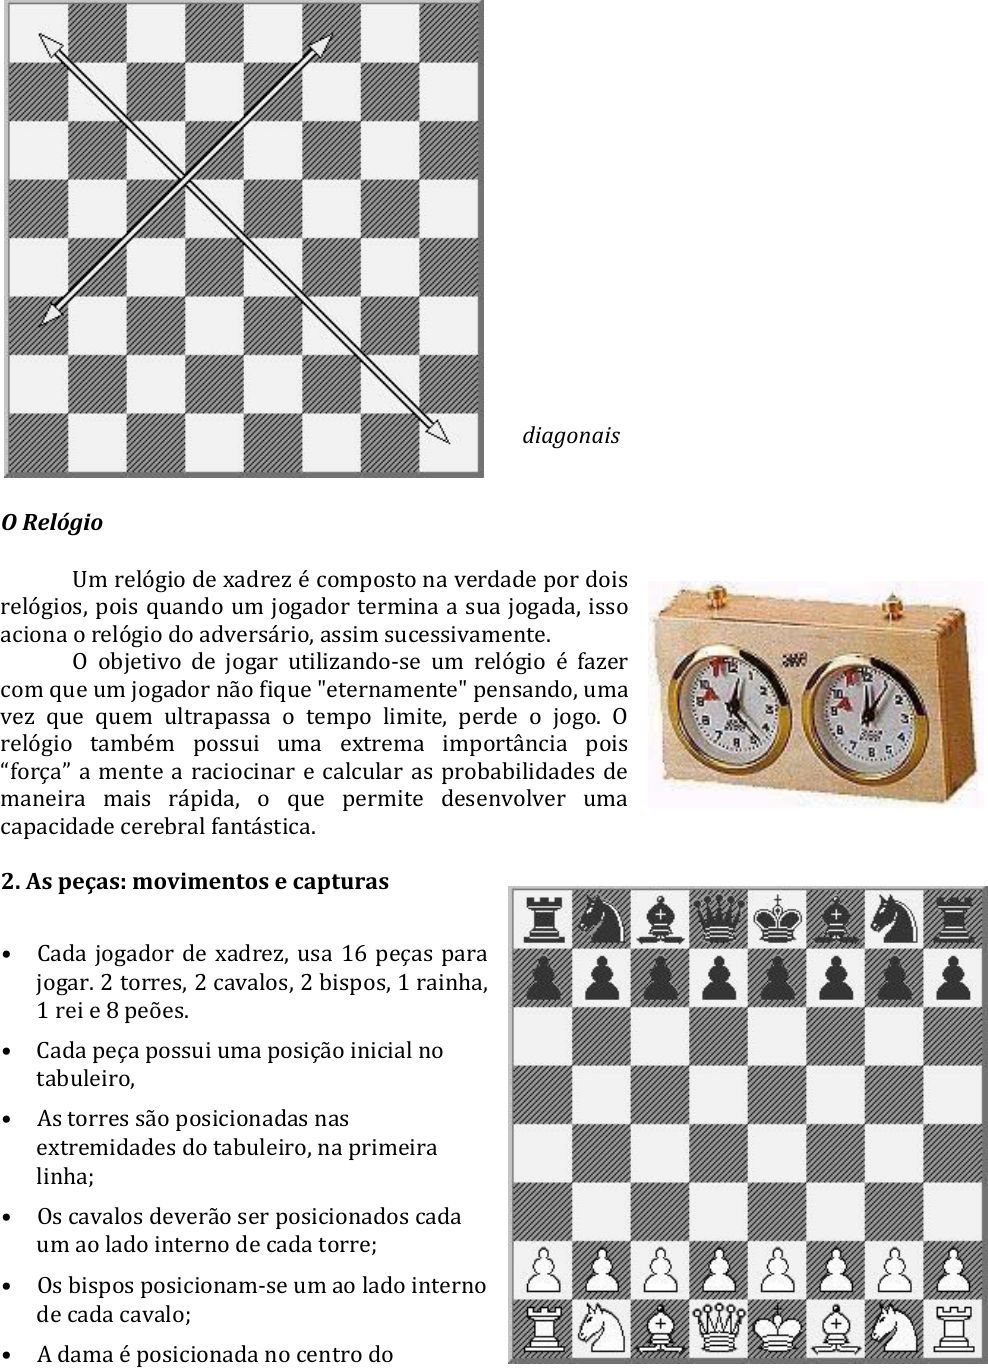 Como ensinar a um leigo os movimentos básicos do xadrez? - Quora